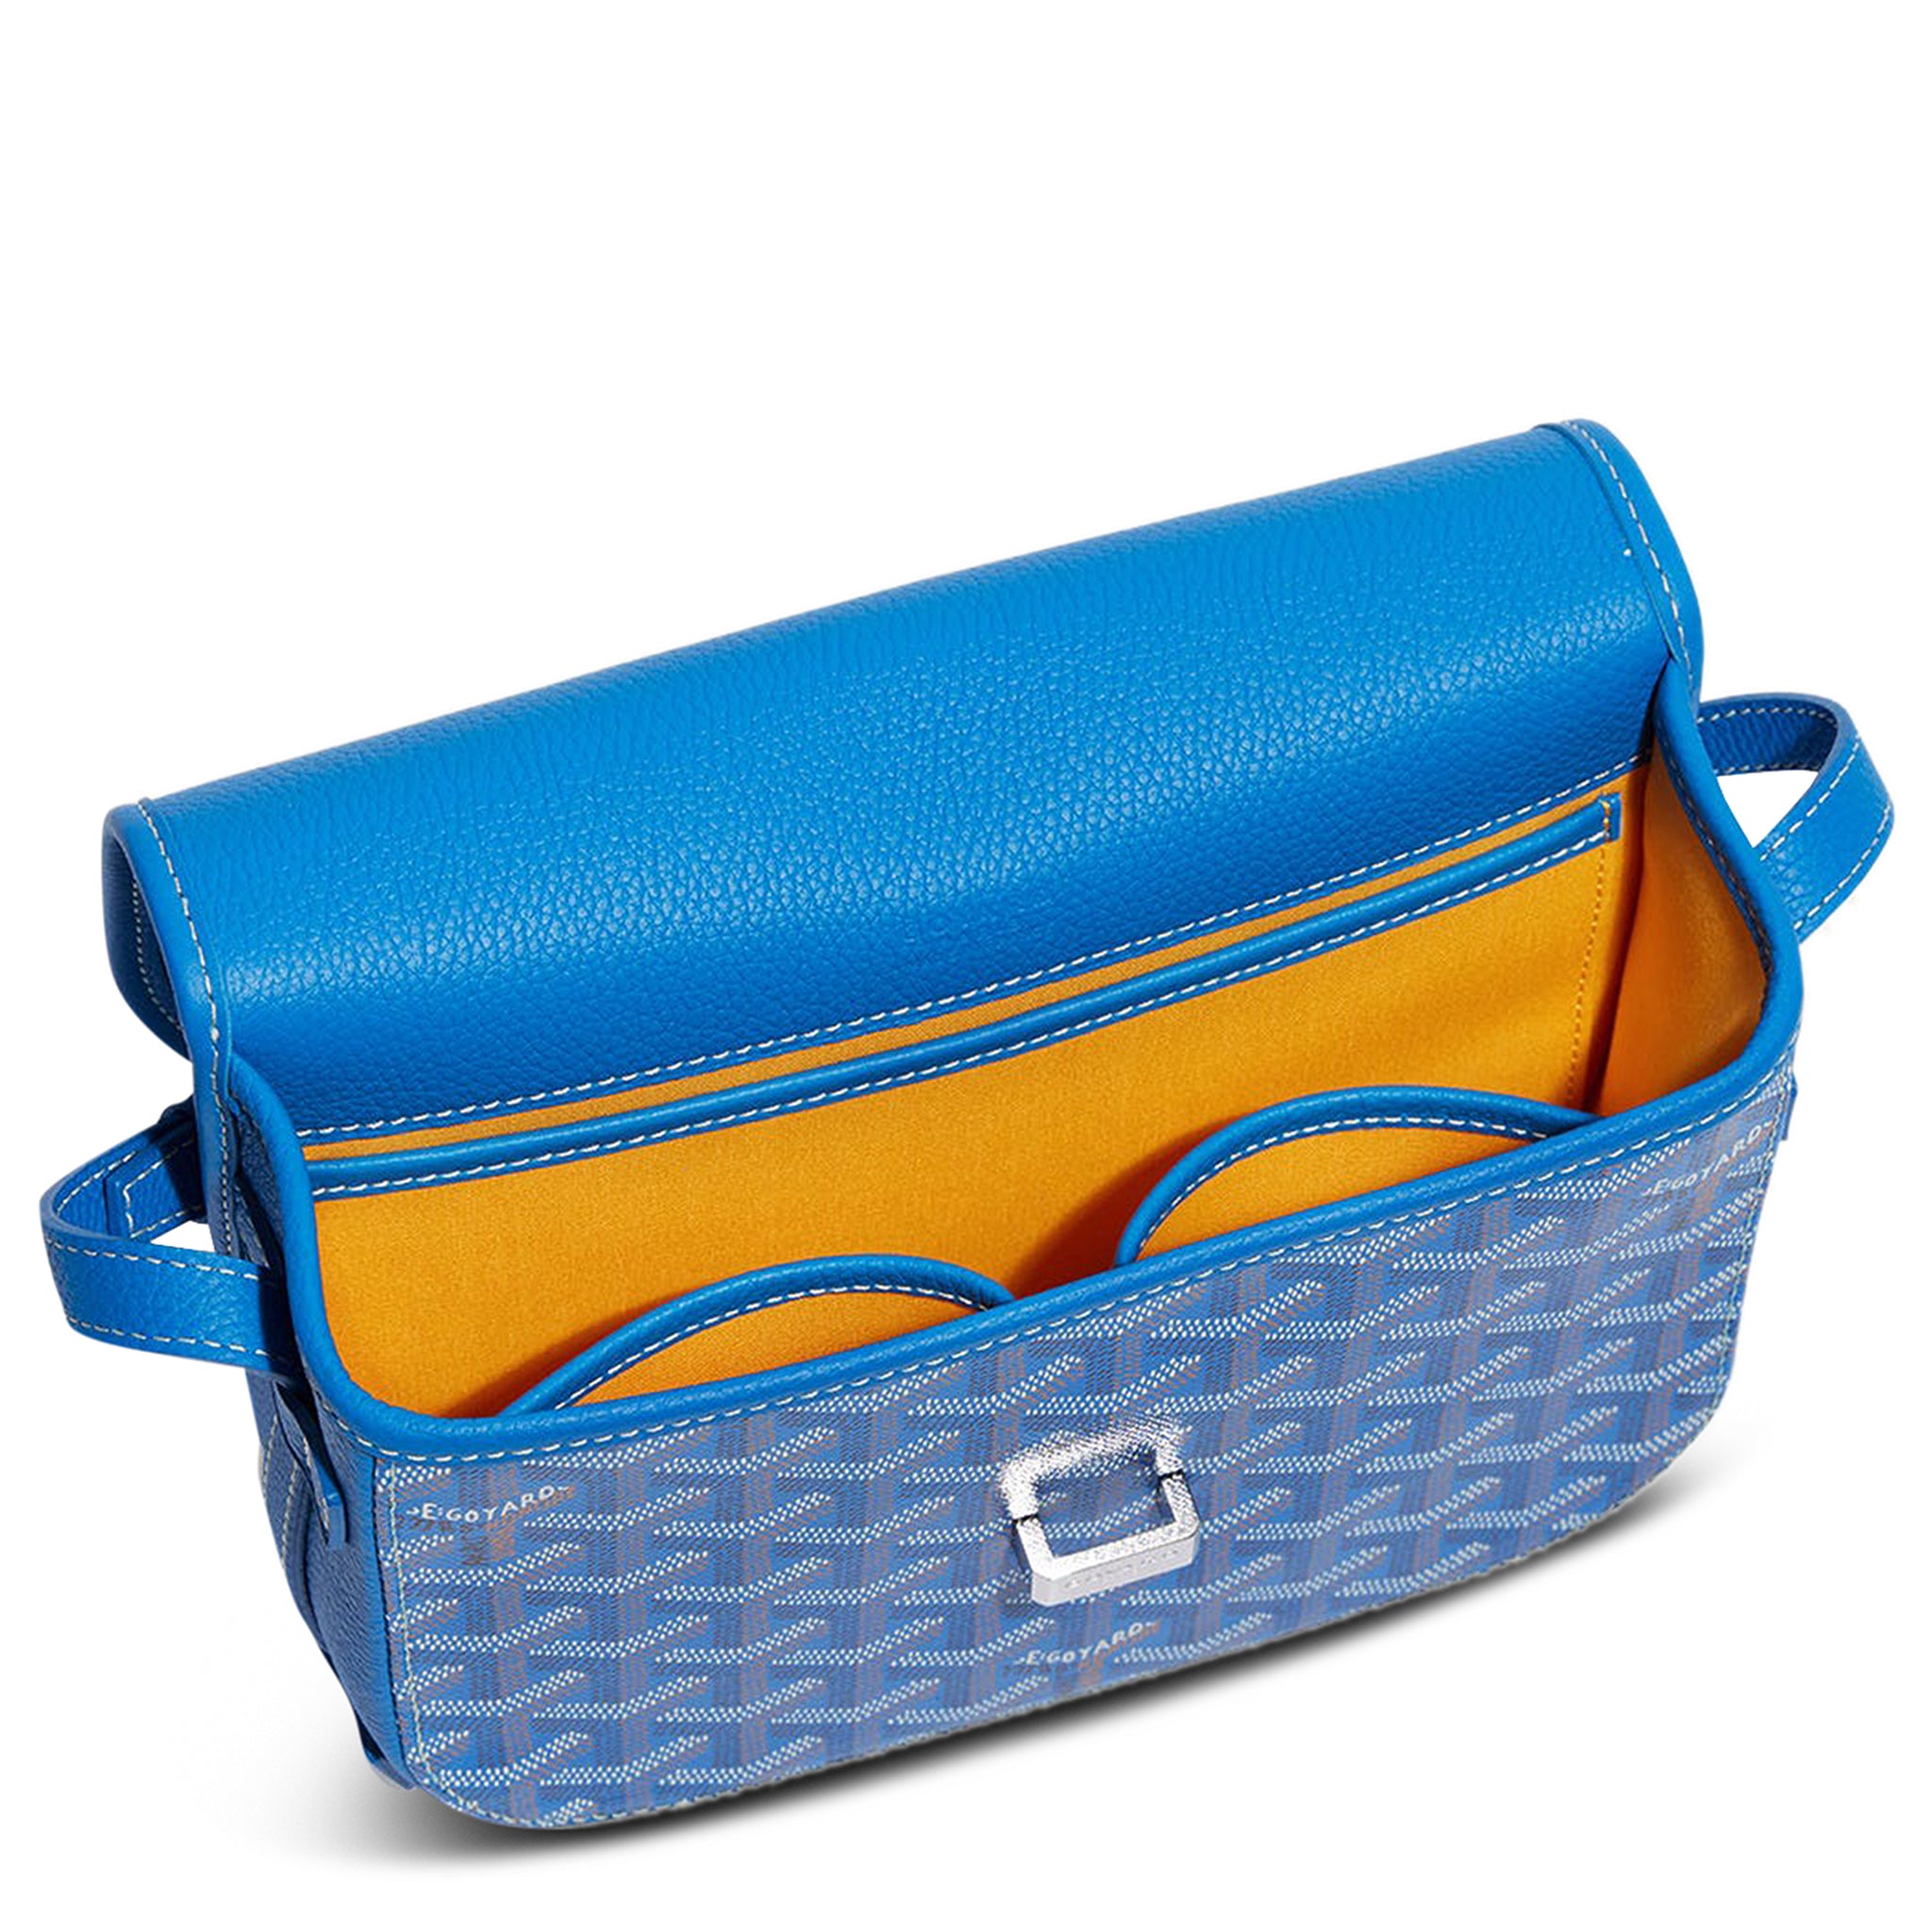 Image of Goyard Goyardine Belvedere II Sky Blue PM Messenger Bag